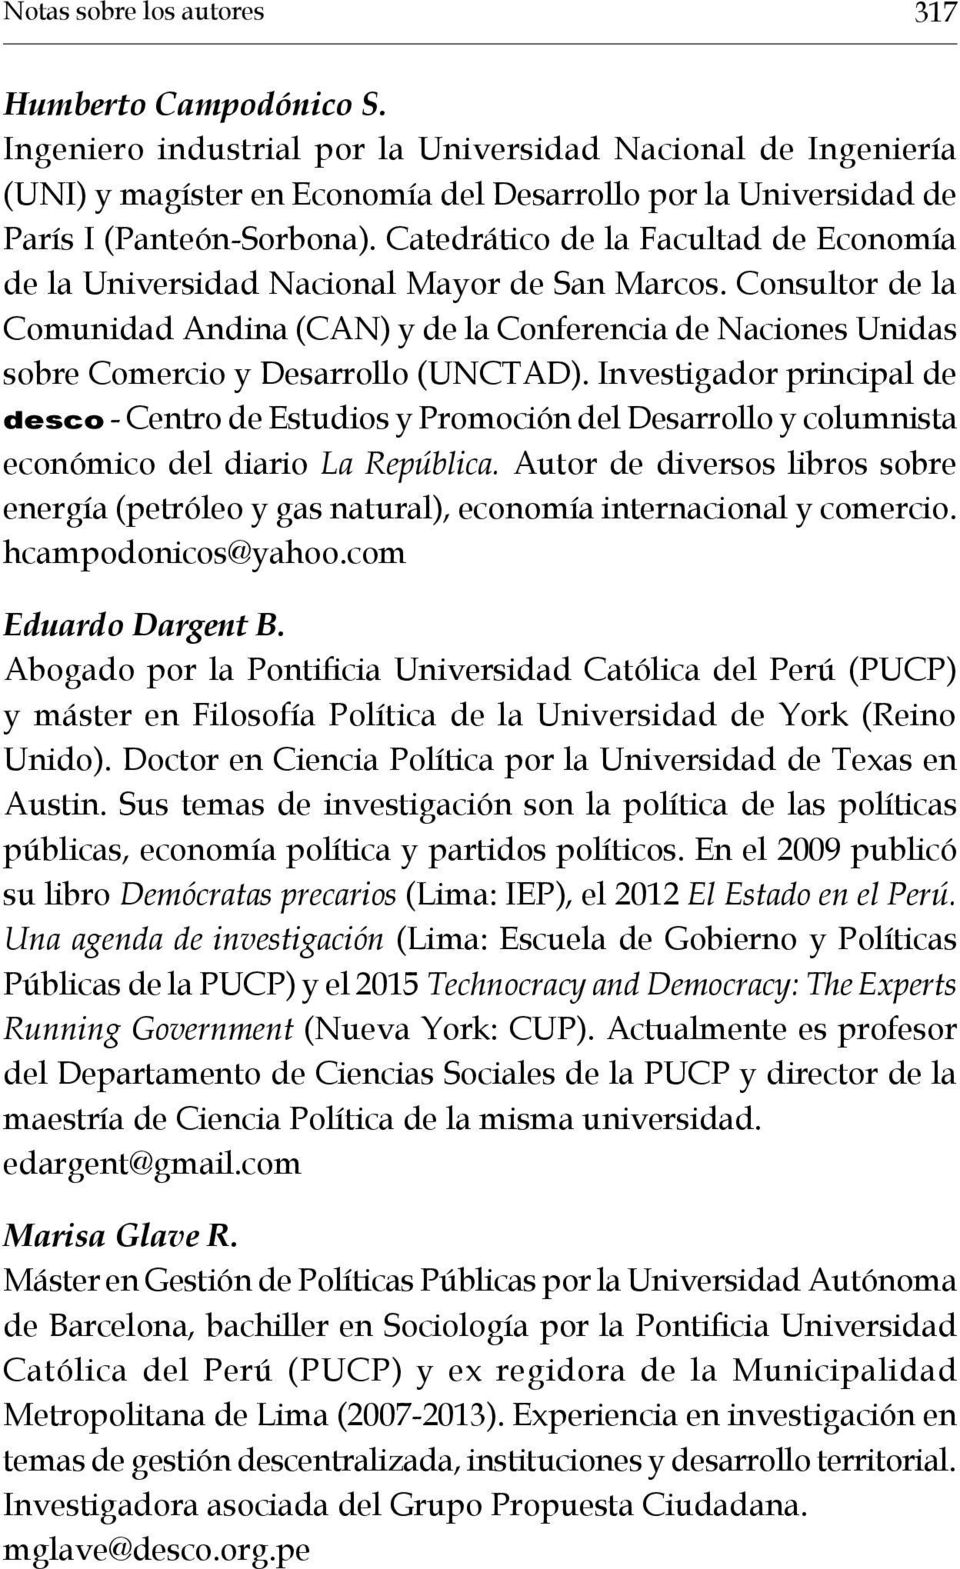 Catedrático de la Facultad de Economía de la Universidad Nacional Mayor de San Marcos.